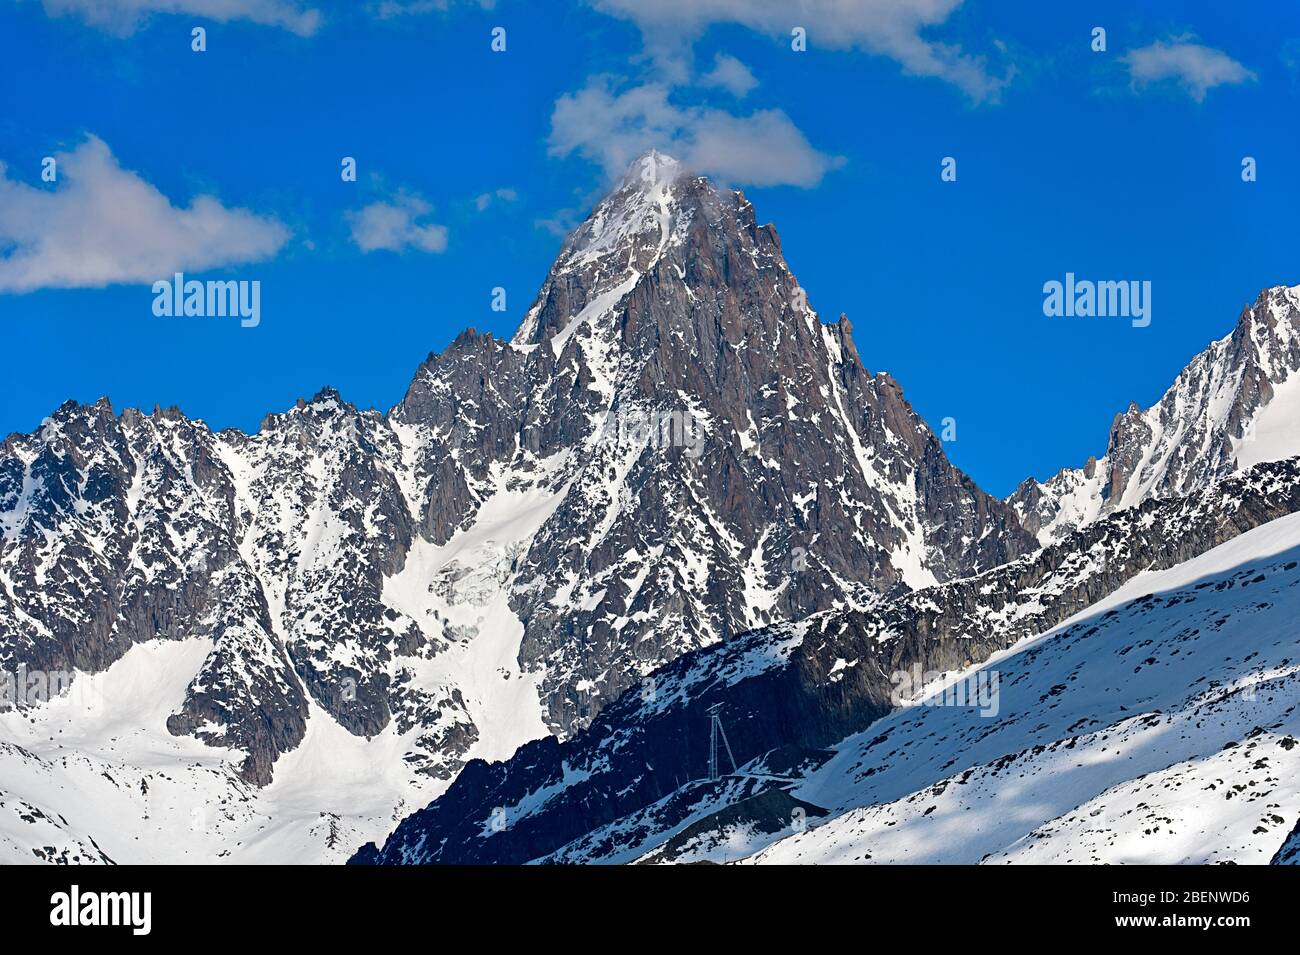 Aiguille du Chardonnet, Mont Blanc massif, Chamonix, Haute-Savoie, France Stock Photo